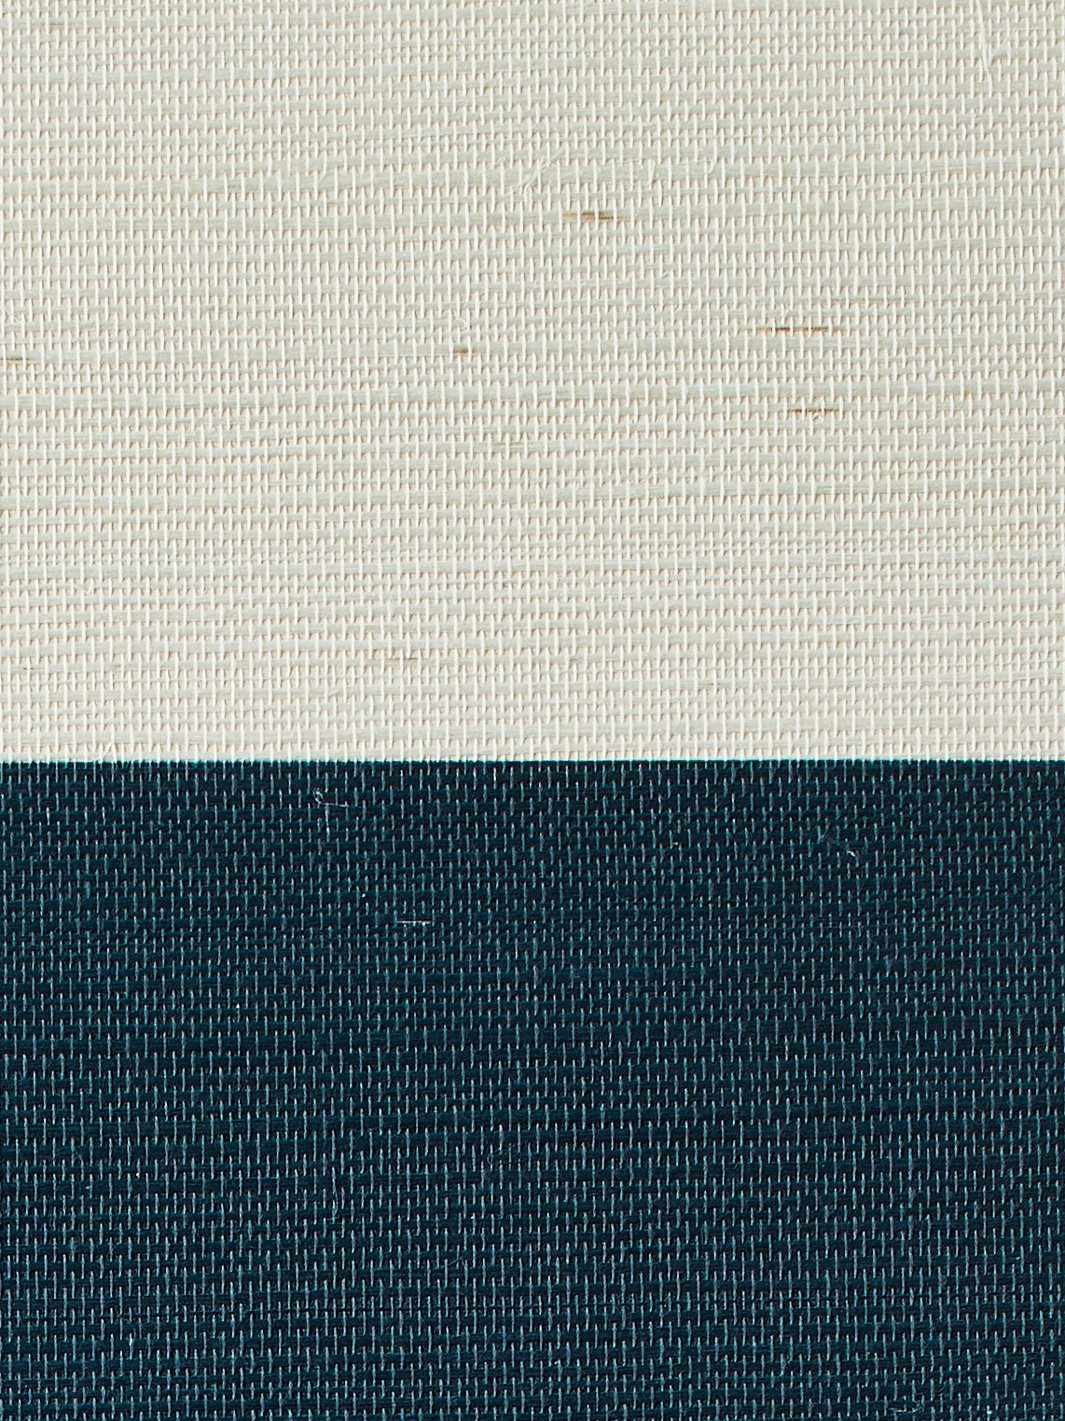 'Wide Stripe' Grasscloth' Wallpaper by Wallshoppe - Peacock